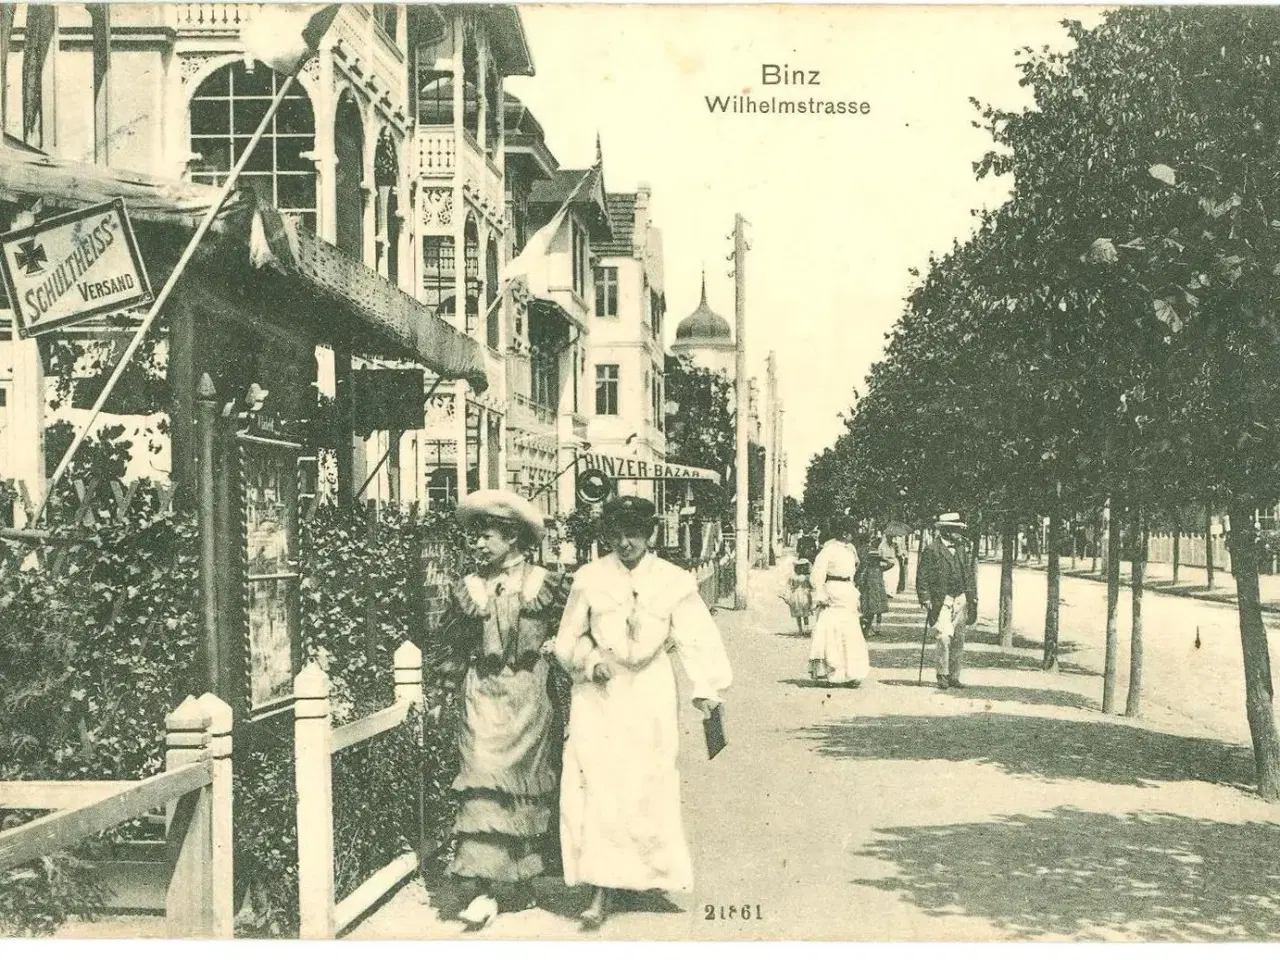 Billede 1 - Binz, Wilhelmstrasse, 1911